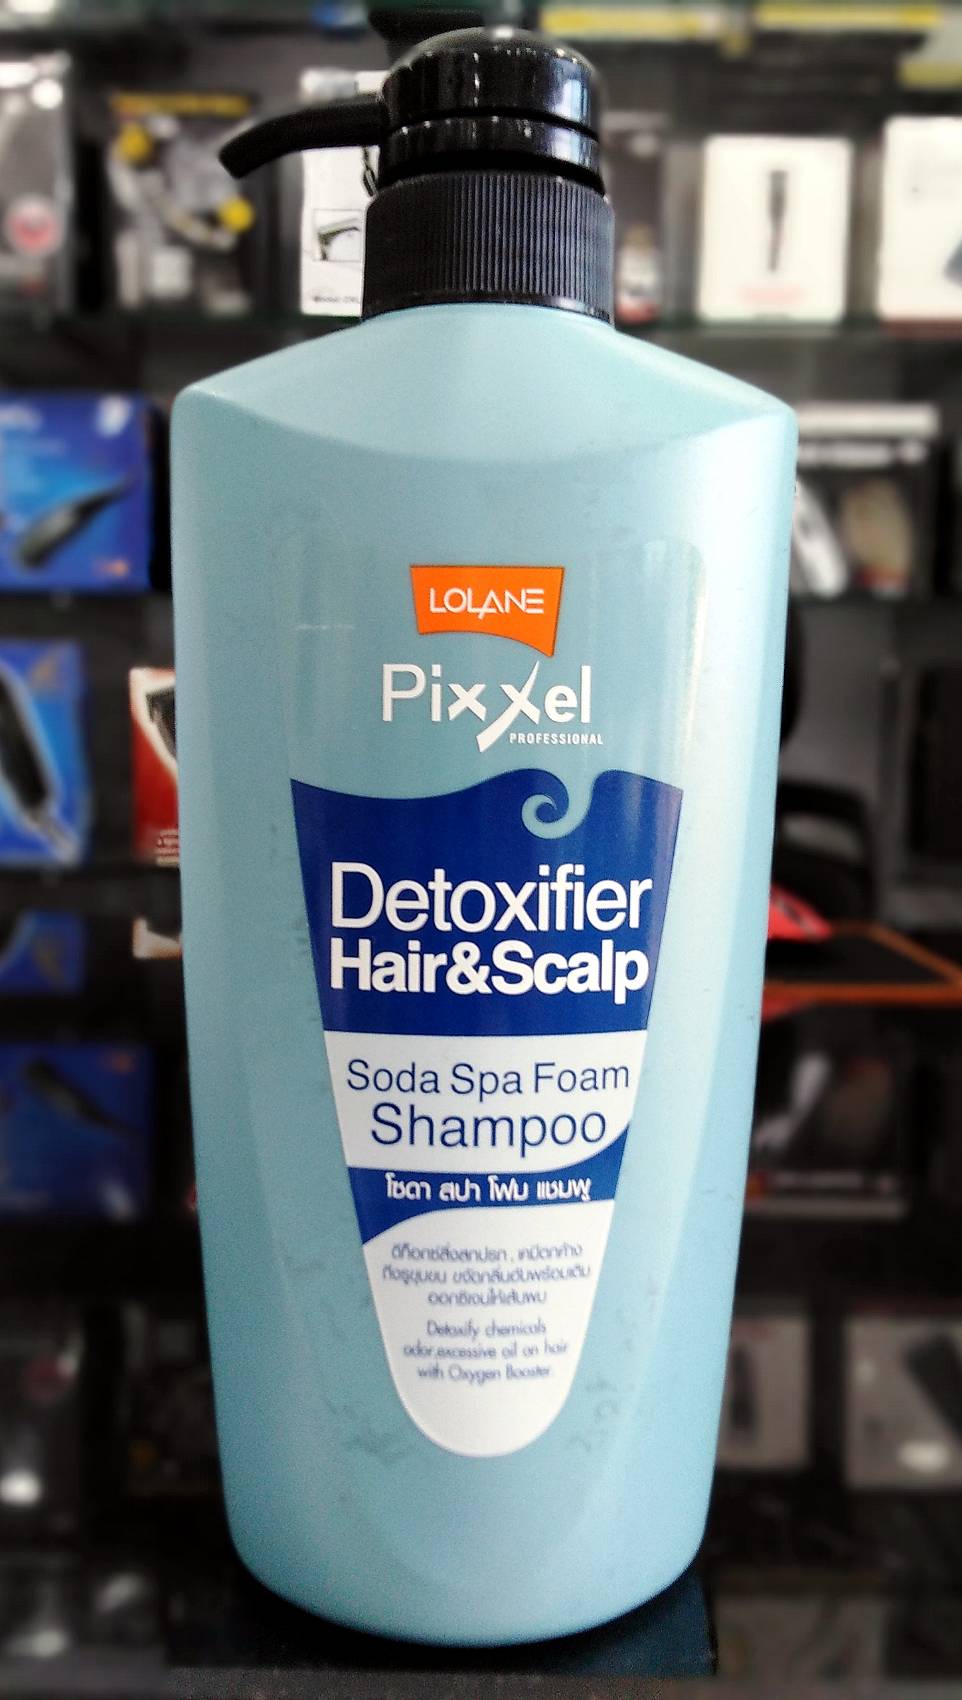 แชมพูโลแลน พิกเซล ดีท็อกซ์ซิฟายเออร์ แฮร์ แอนด์ สกาล์ป โซดา สปา โฟม แชมพู / LOLANE Pixxel Detoxifier Hair & Scalp Soda Spa Foam Shampoo ปริมาณสุทธิ 500 มล.